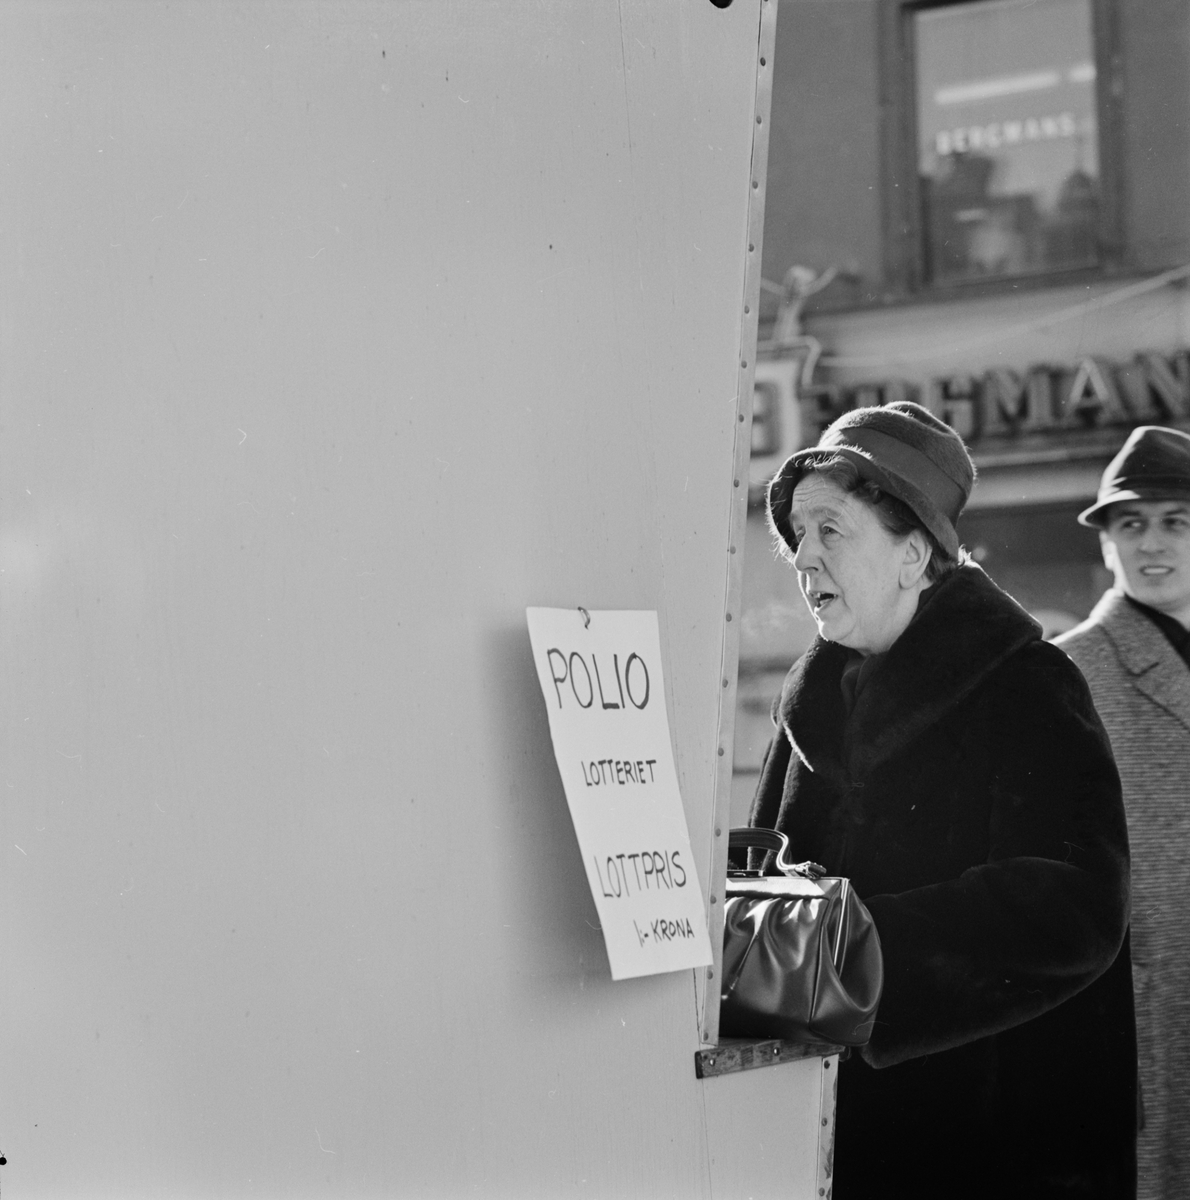 Folkliv - lottförsäljning, Uppsala 1962